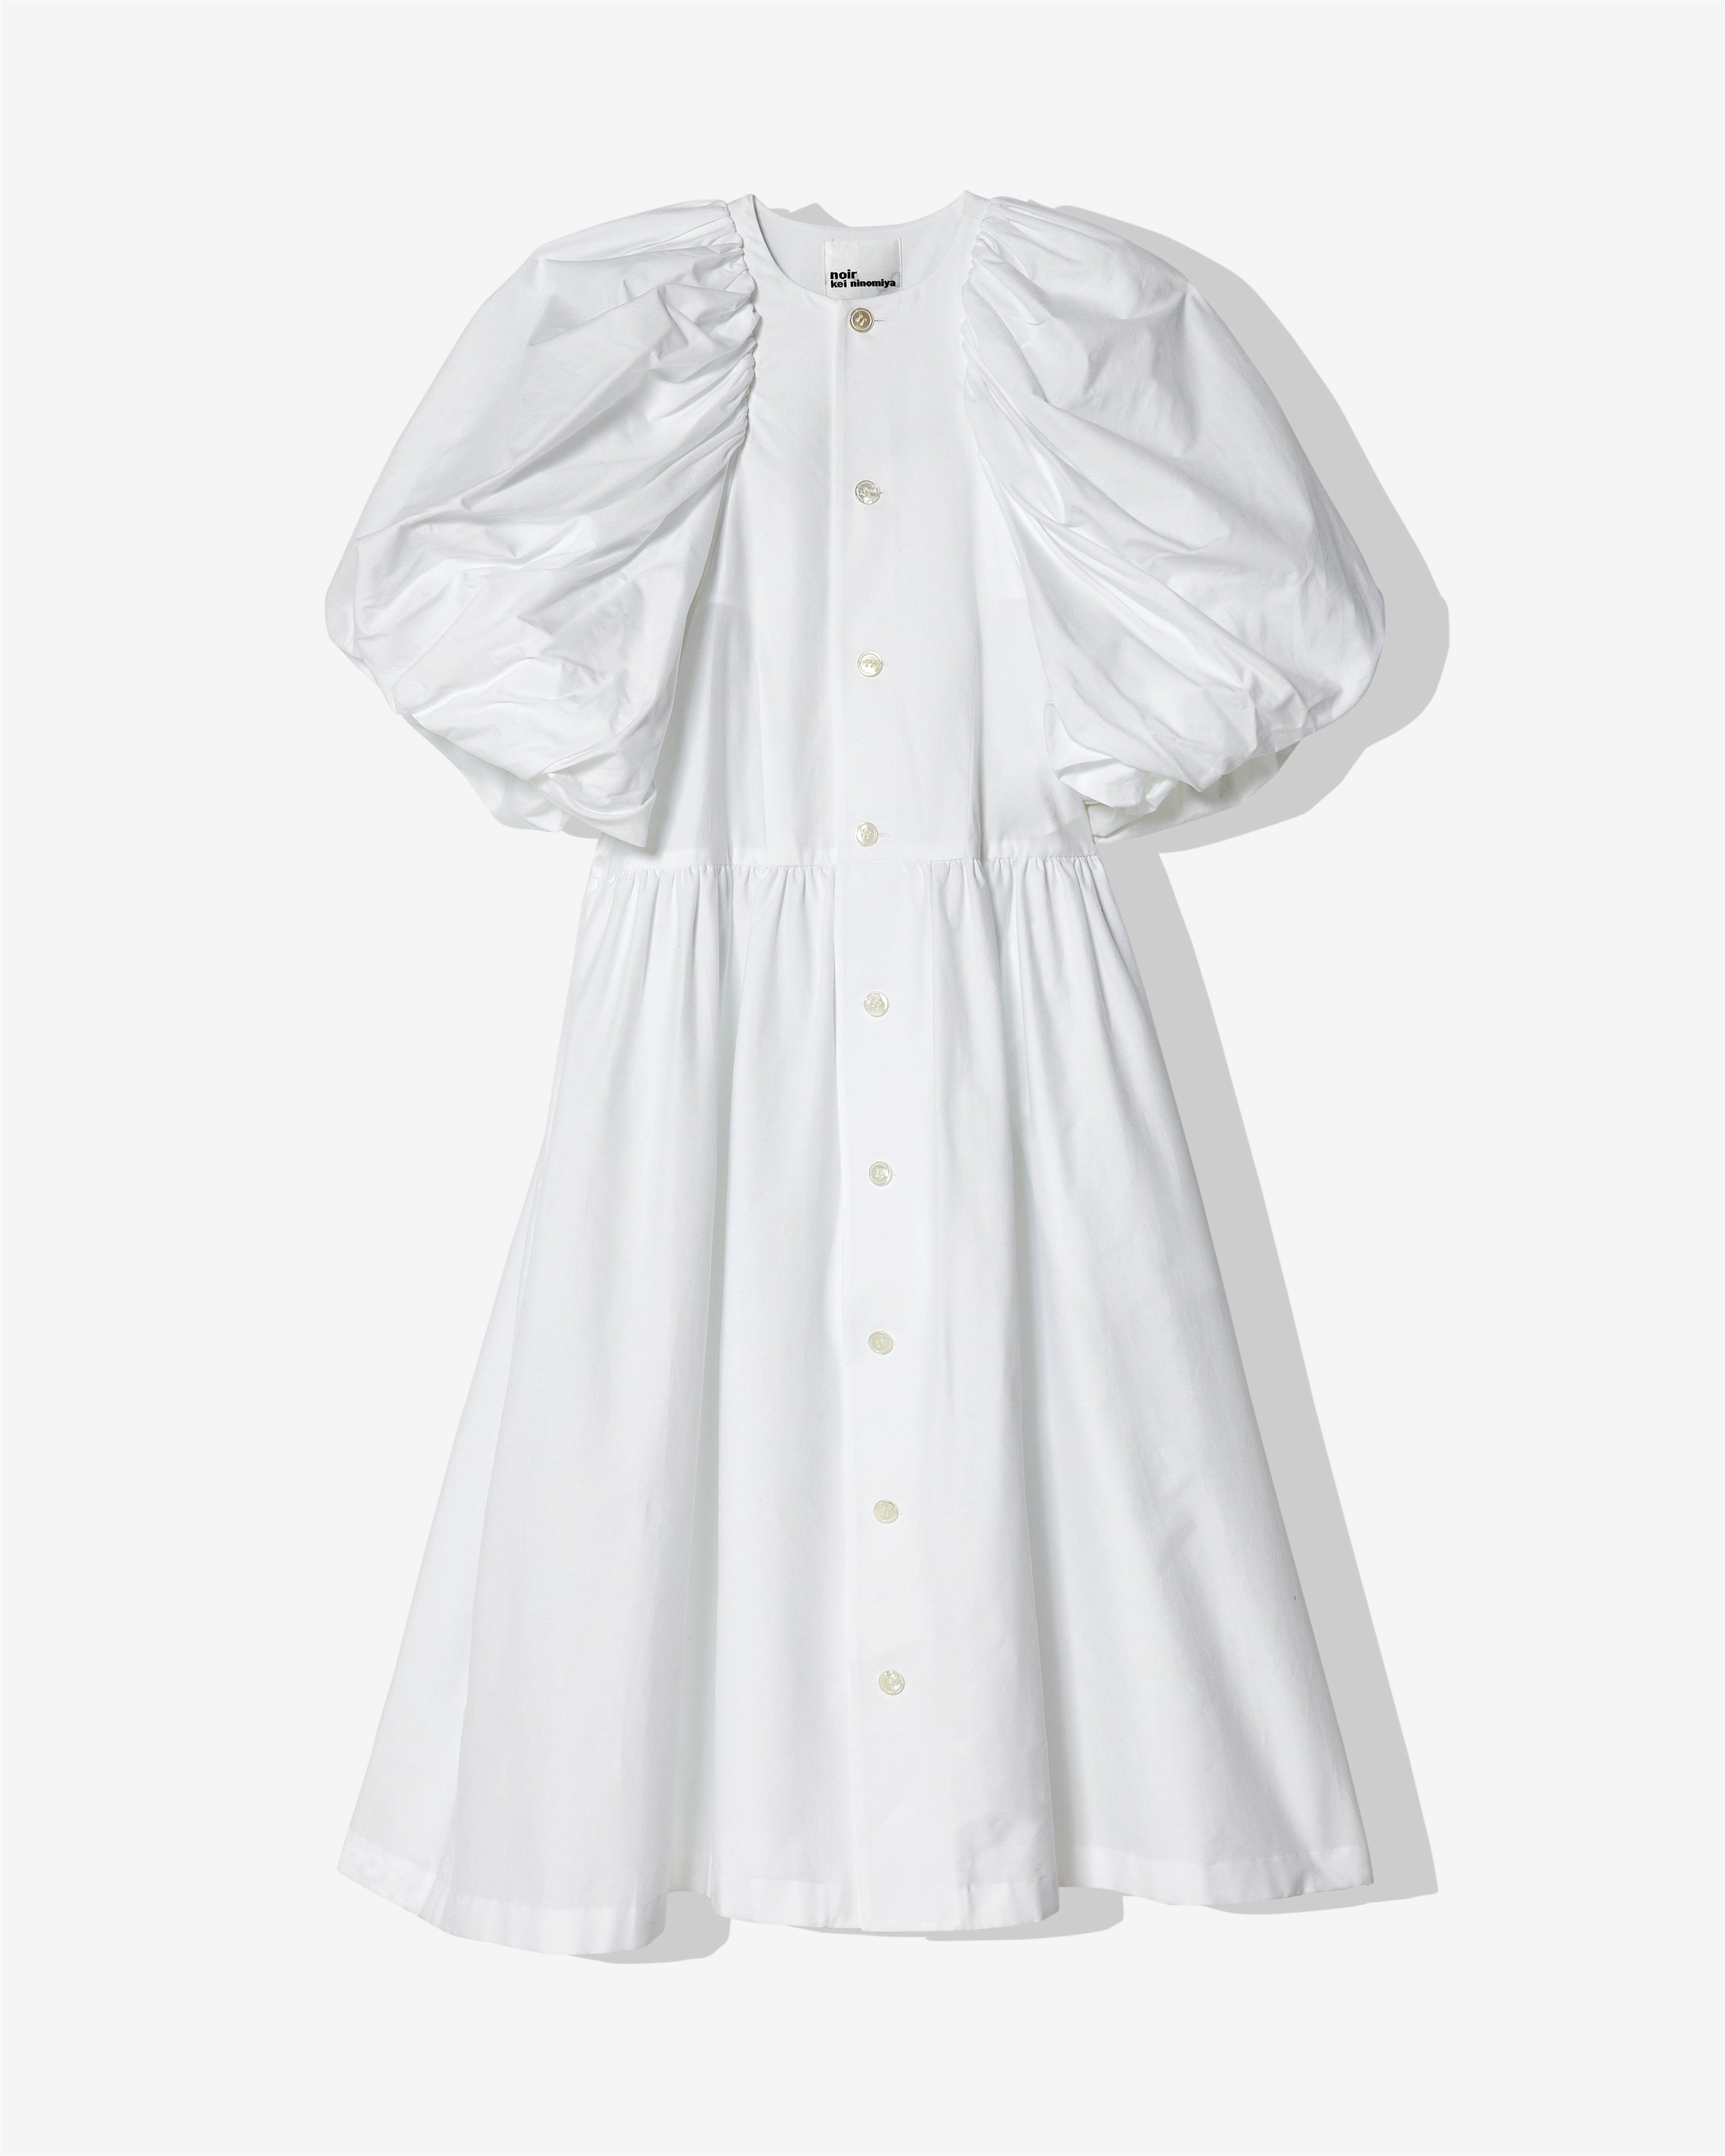 Noir Kei Ninomiya - Women's Puff Sleeve Dress - (White) by NOIR KEI NINOMIYA